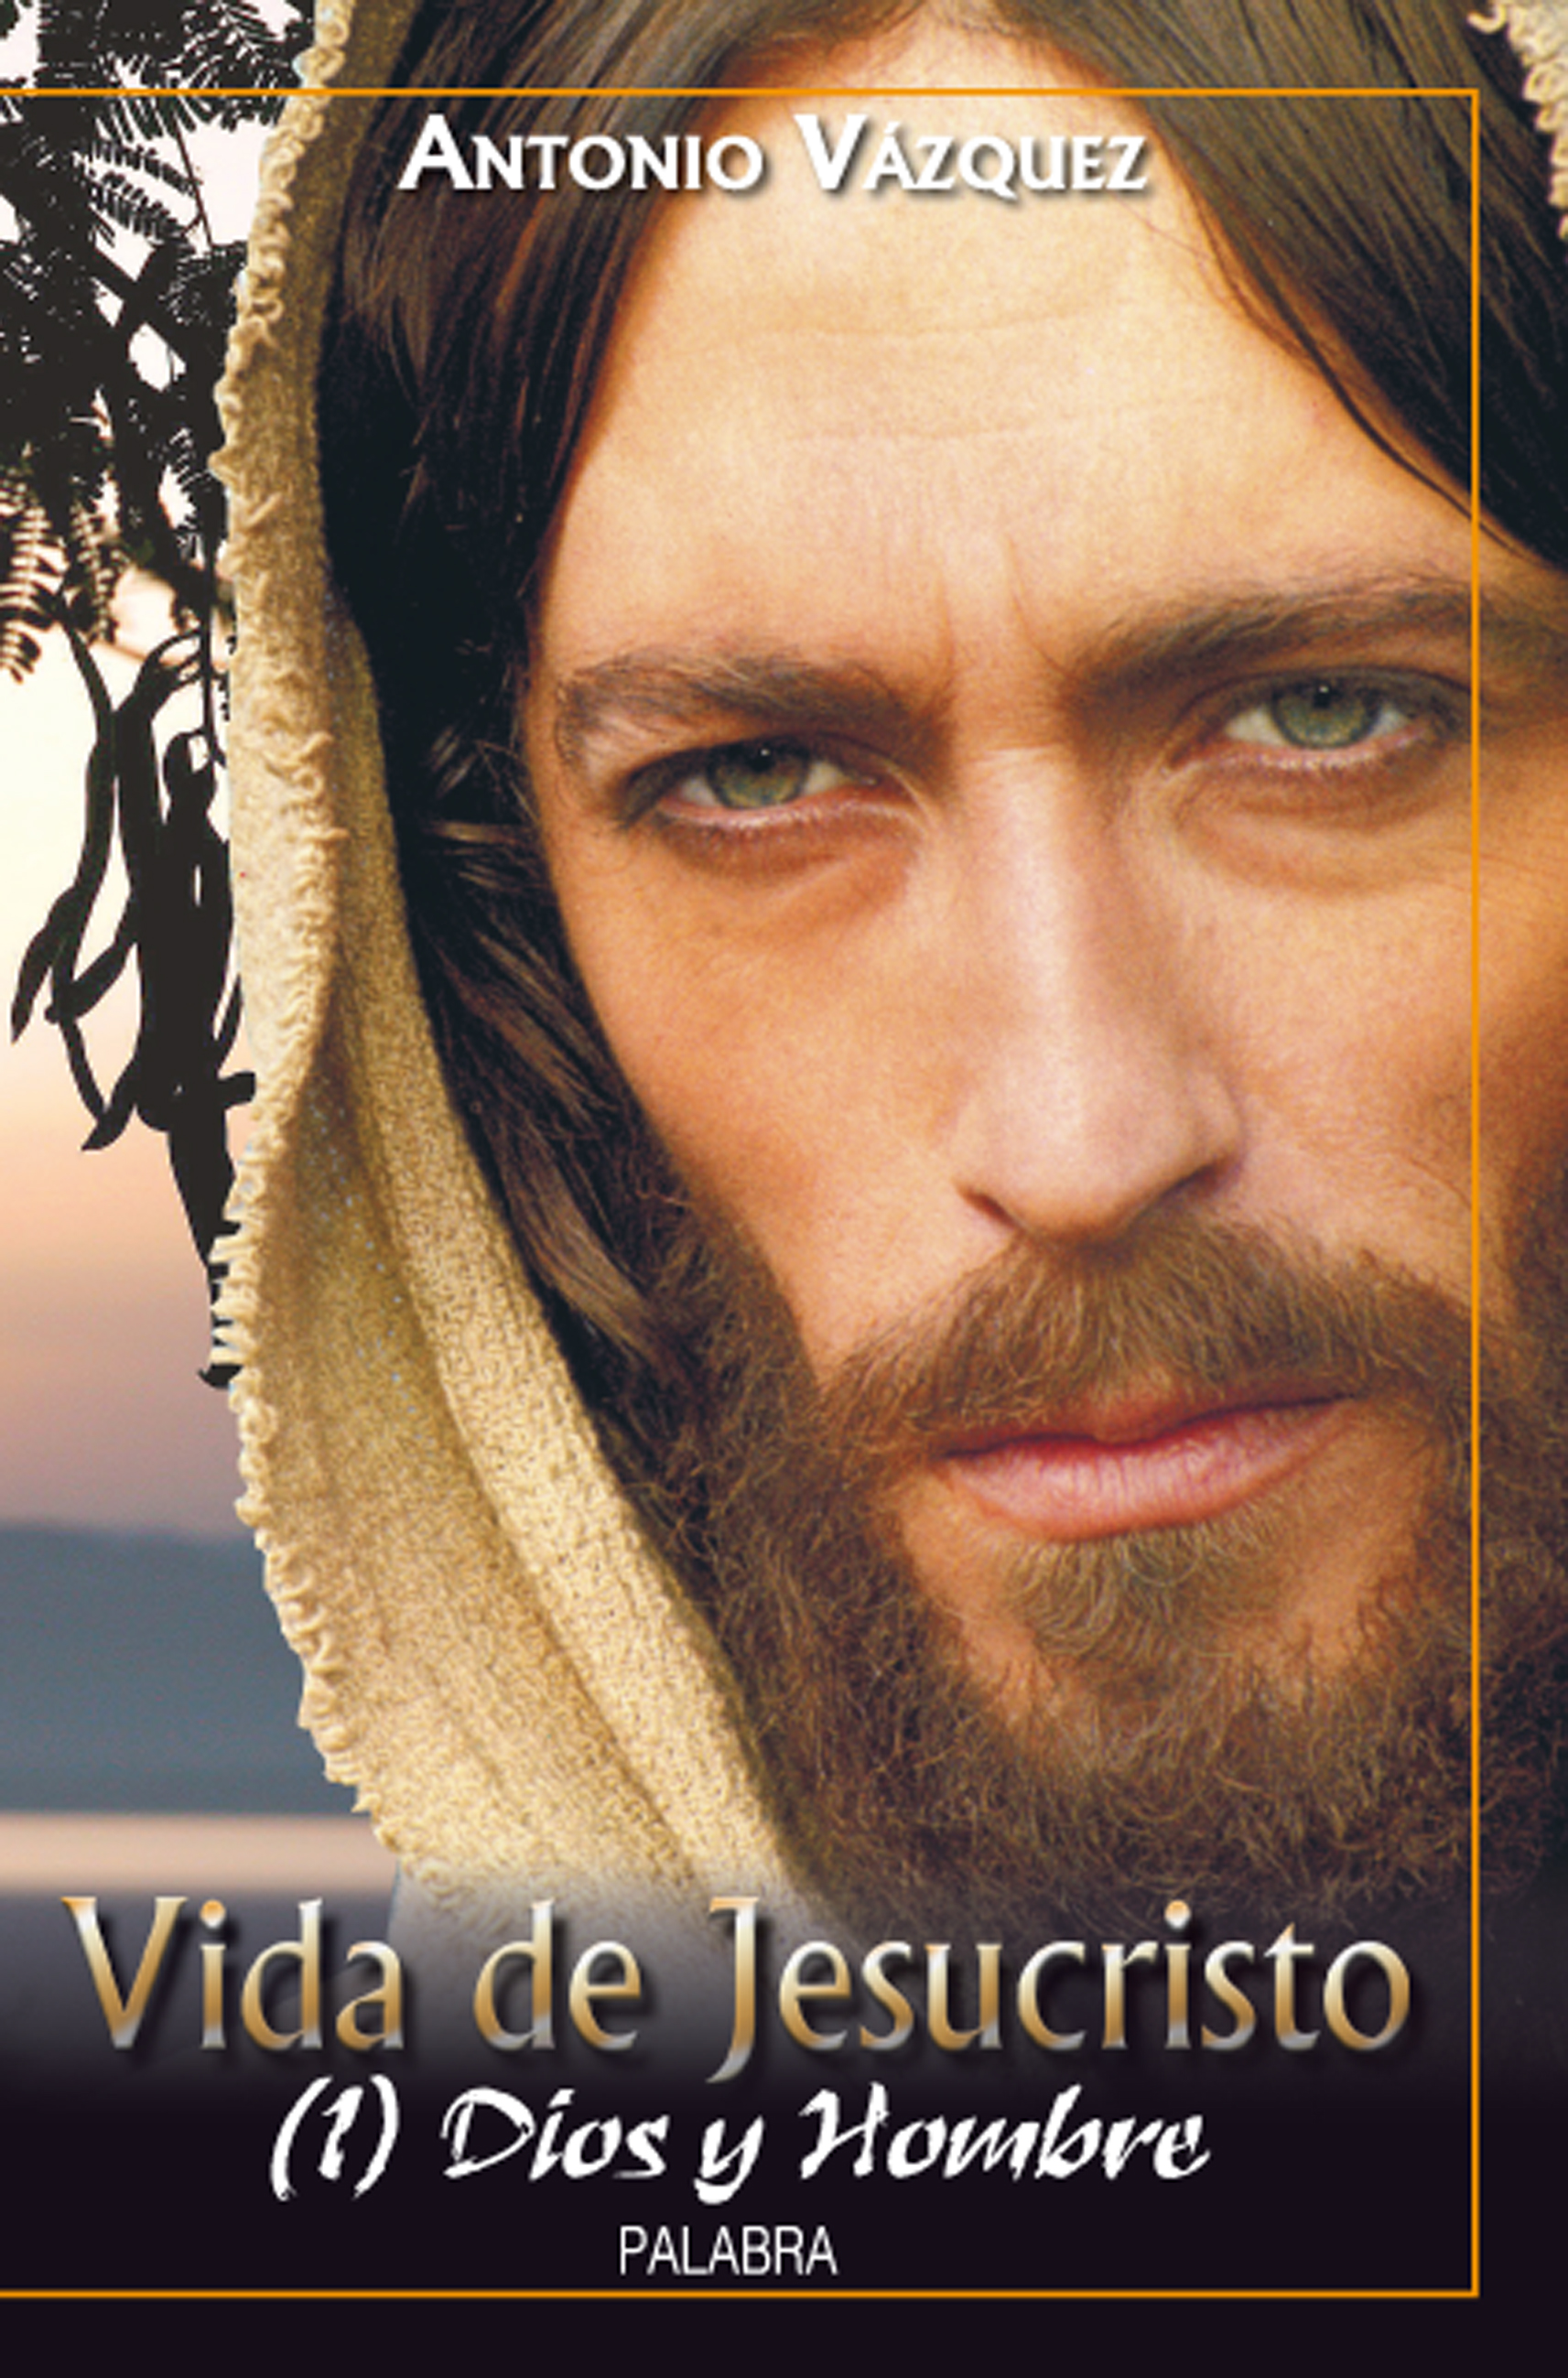 Libro: Vida de Jesucristo I de Antonio Vázquez Galiano